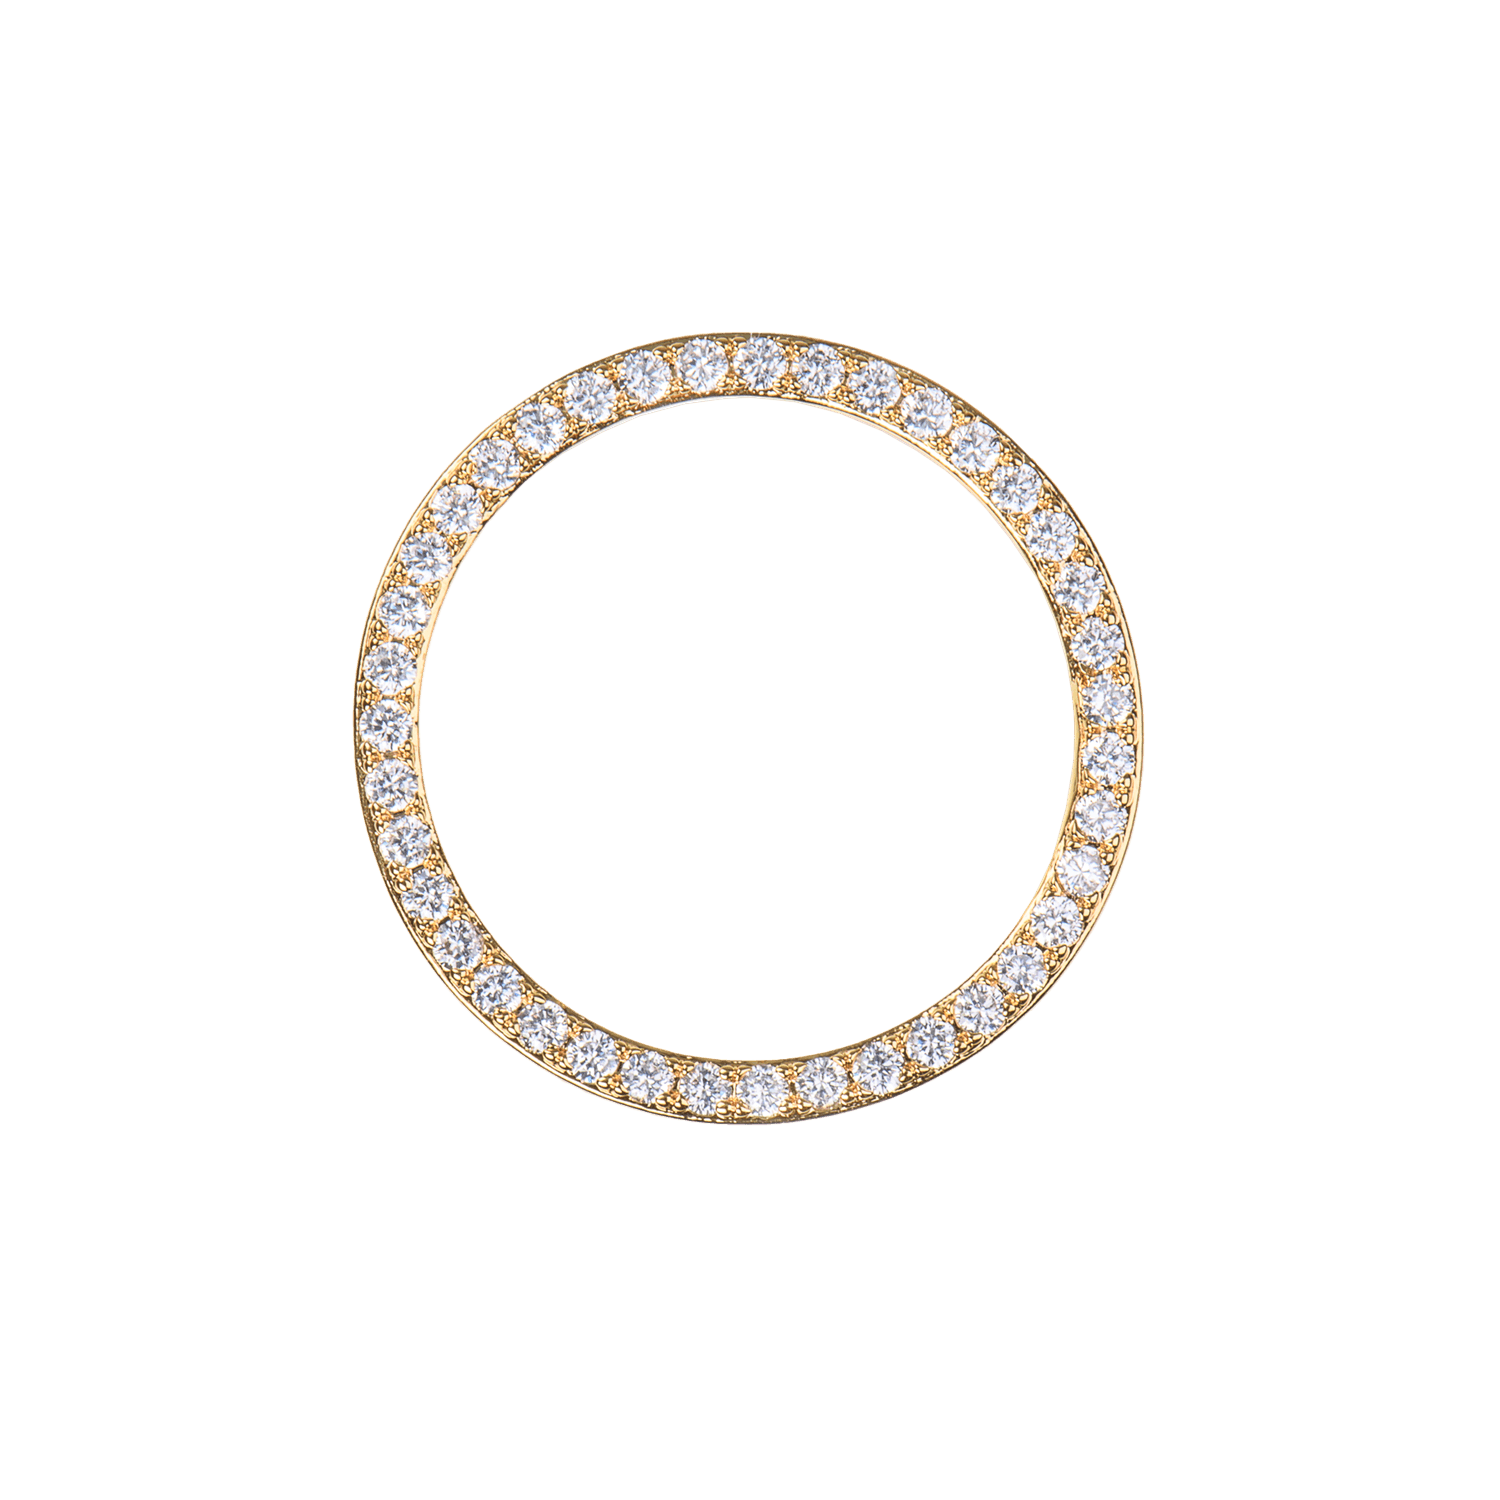 Emilia Large ring charm White